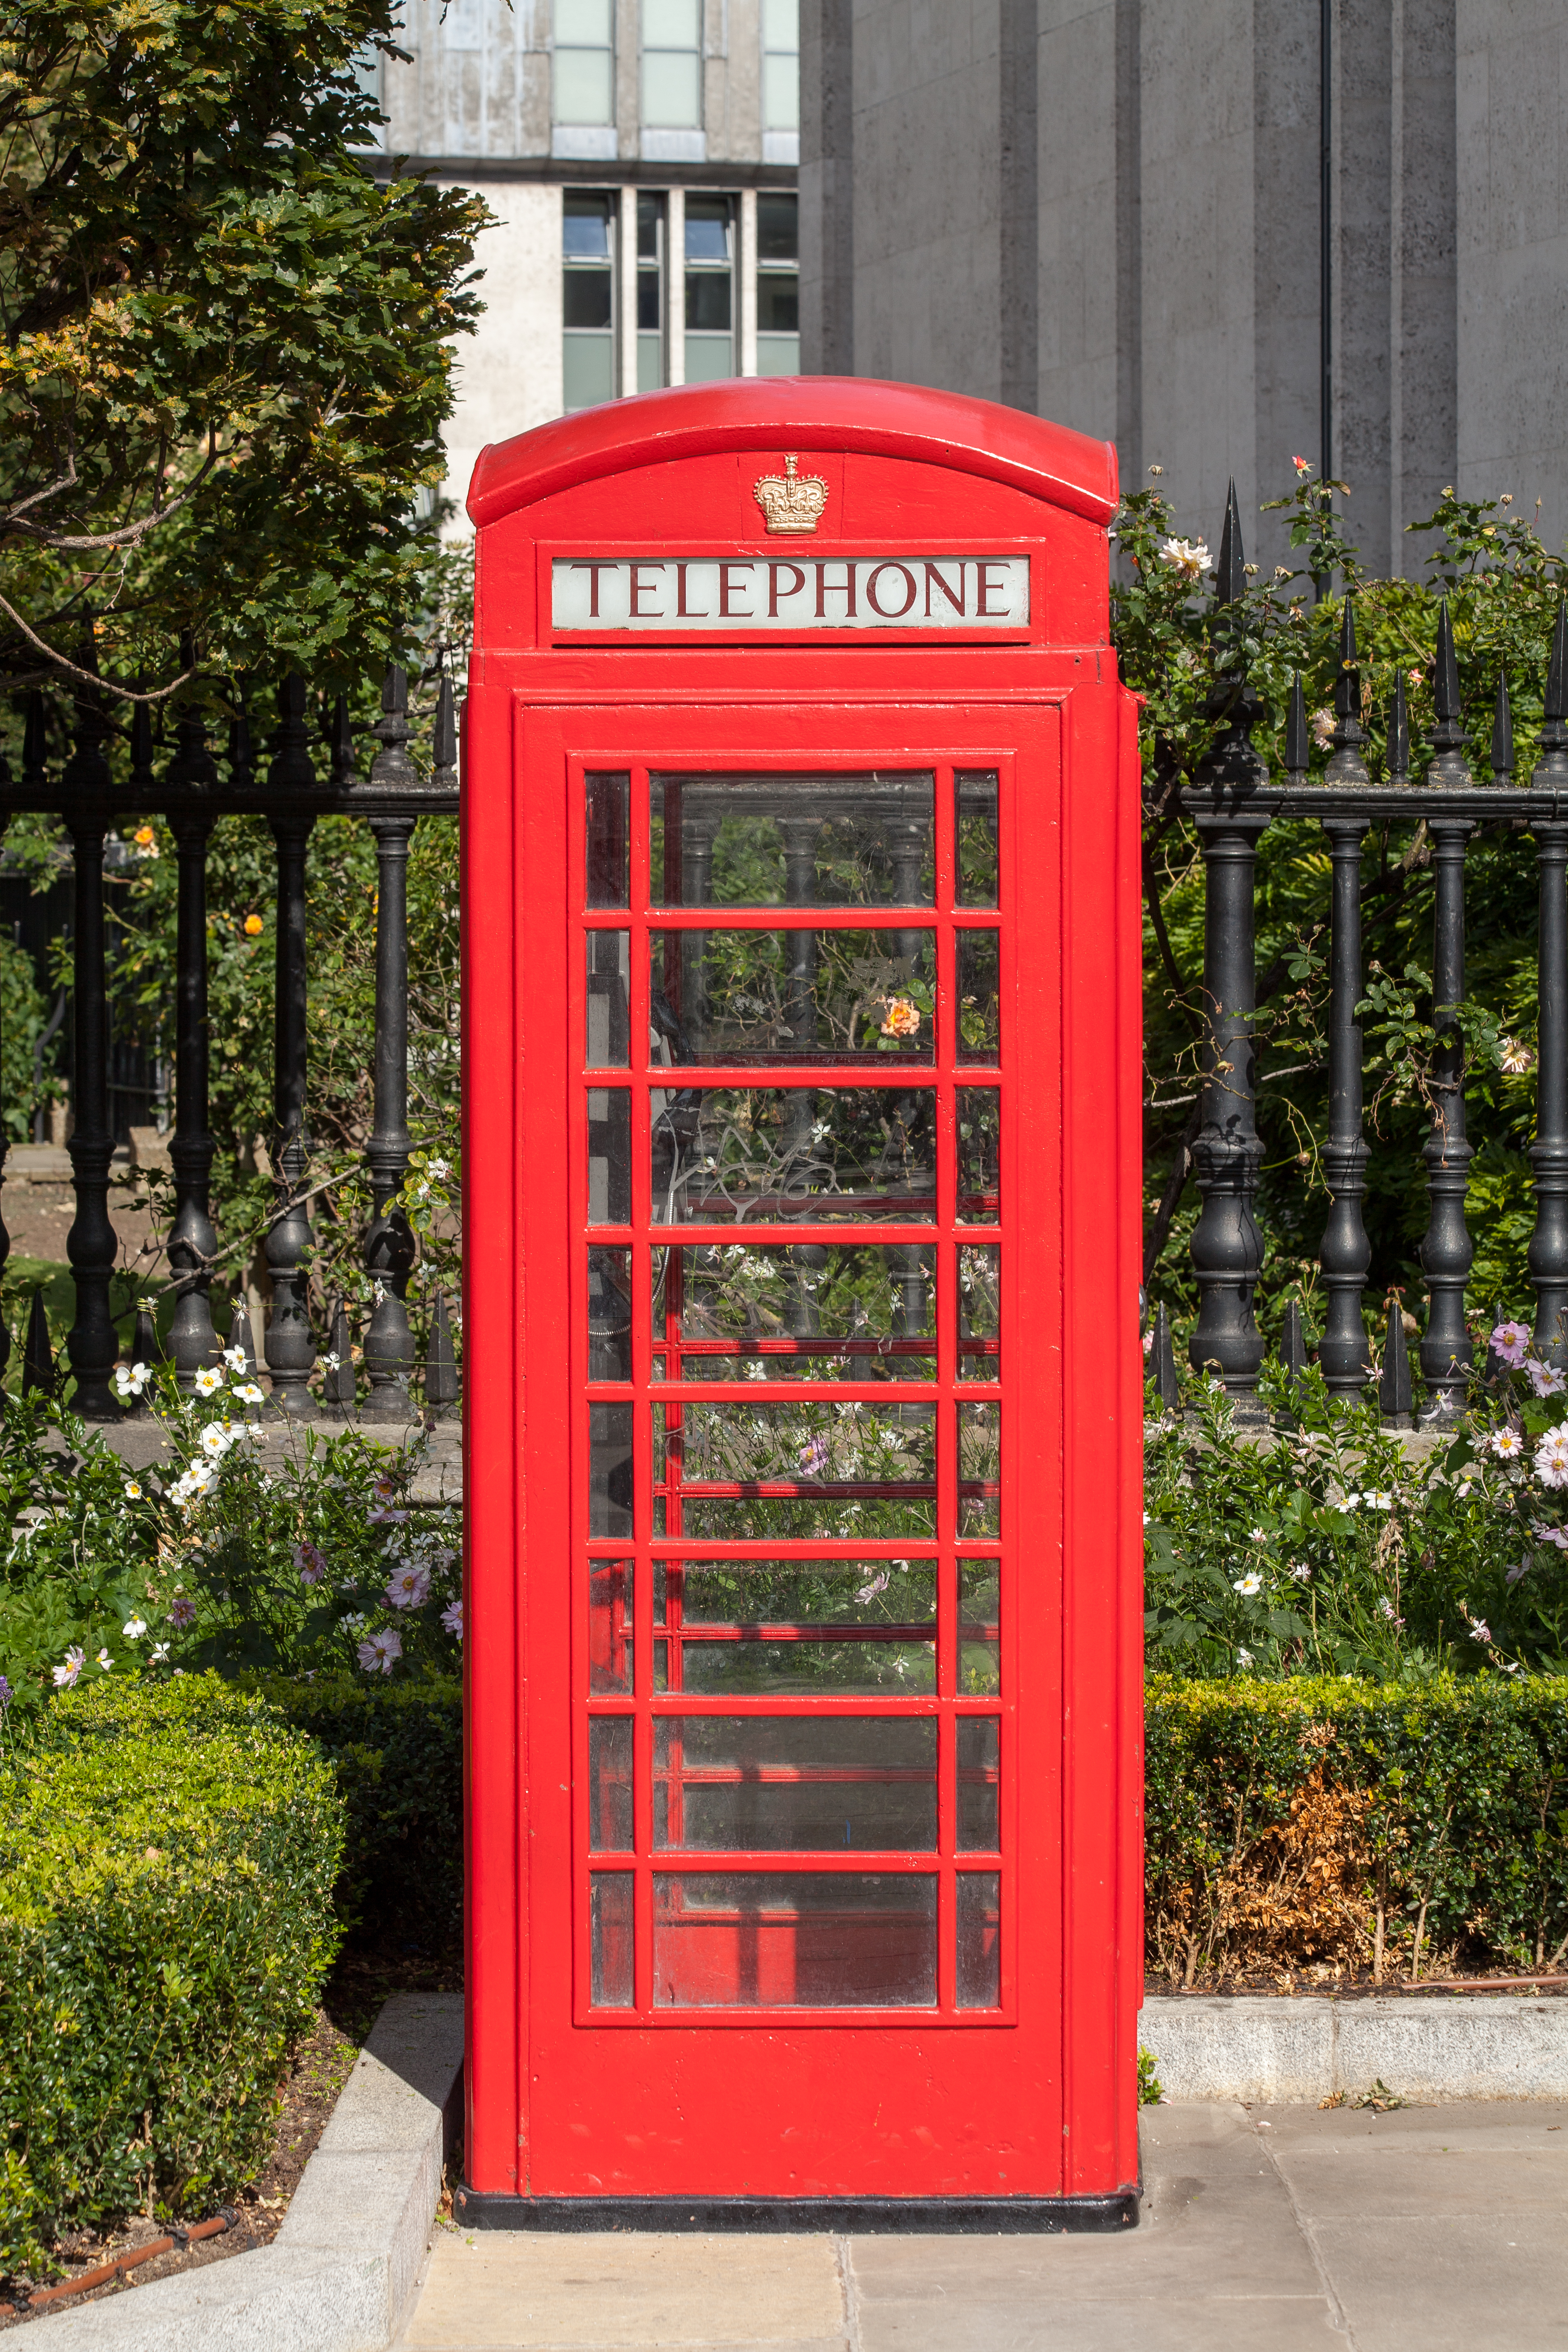 Ее телефон на английском. Красная телефонная будка в Лондоне. Красные Телефонные будки в Англии. Телефонная будка Британия. Red telephone Box in London.